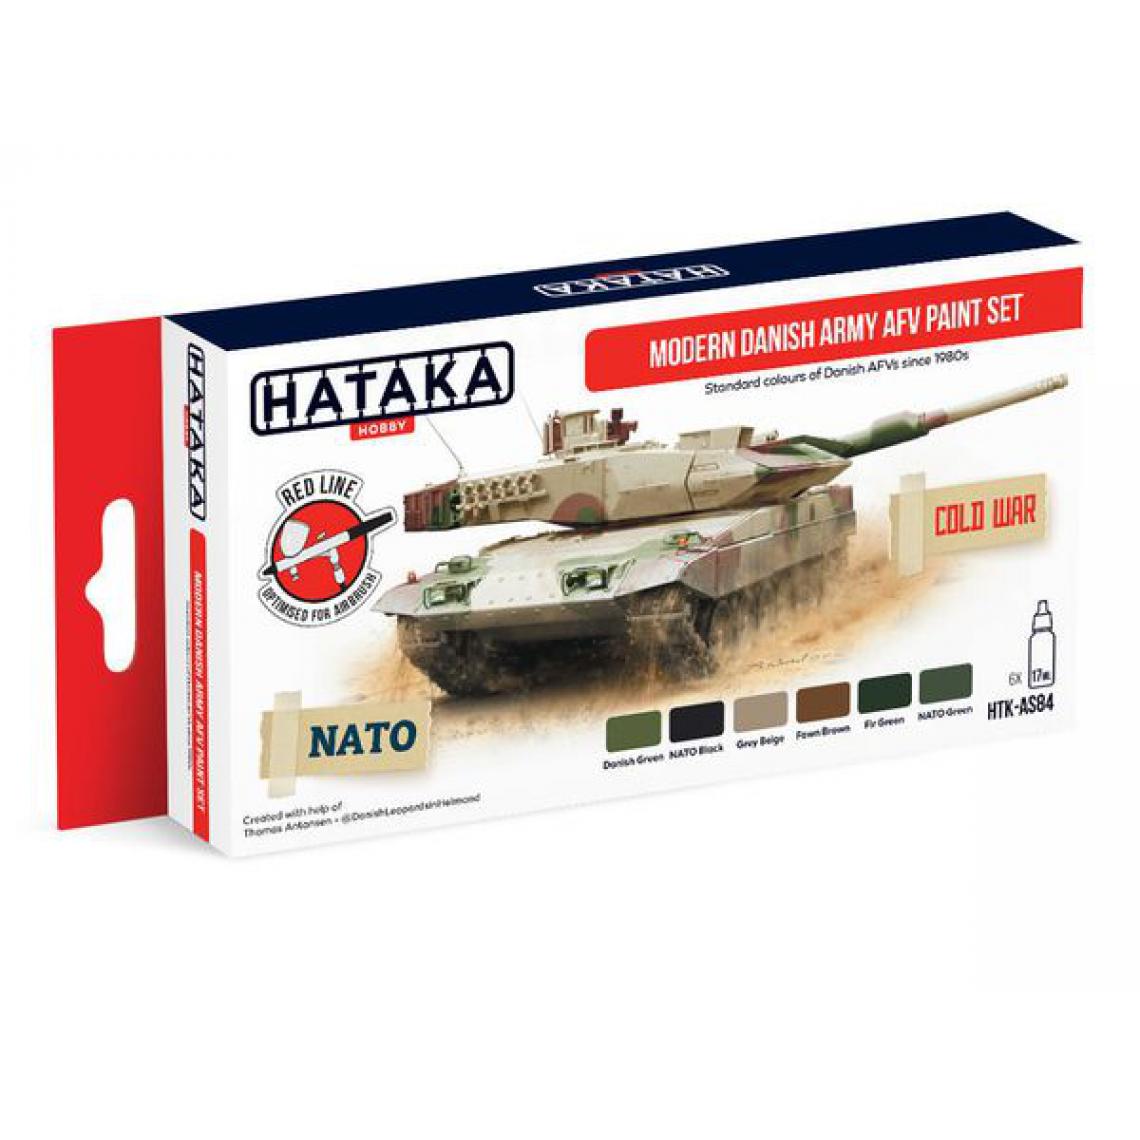 Hataka - Red Line Set (6 pcs) Modern Danish Army AFV paint set - HATAKA - Accessoires et pièces